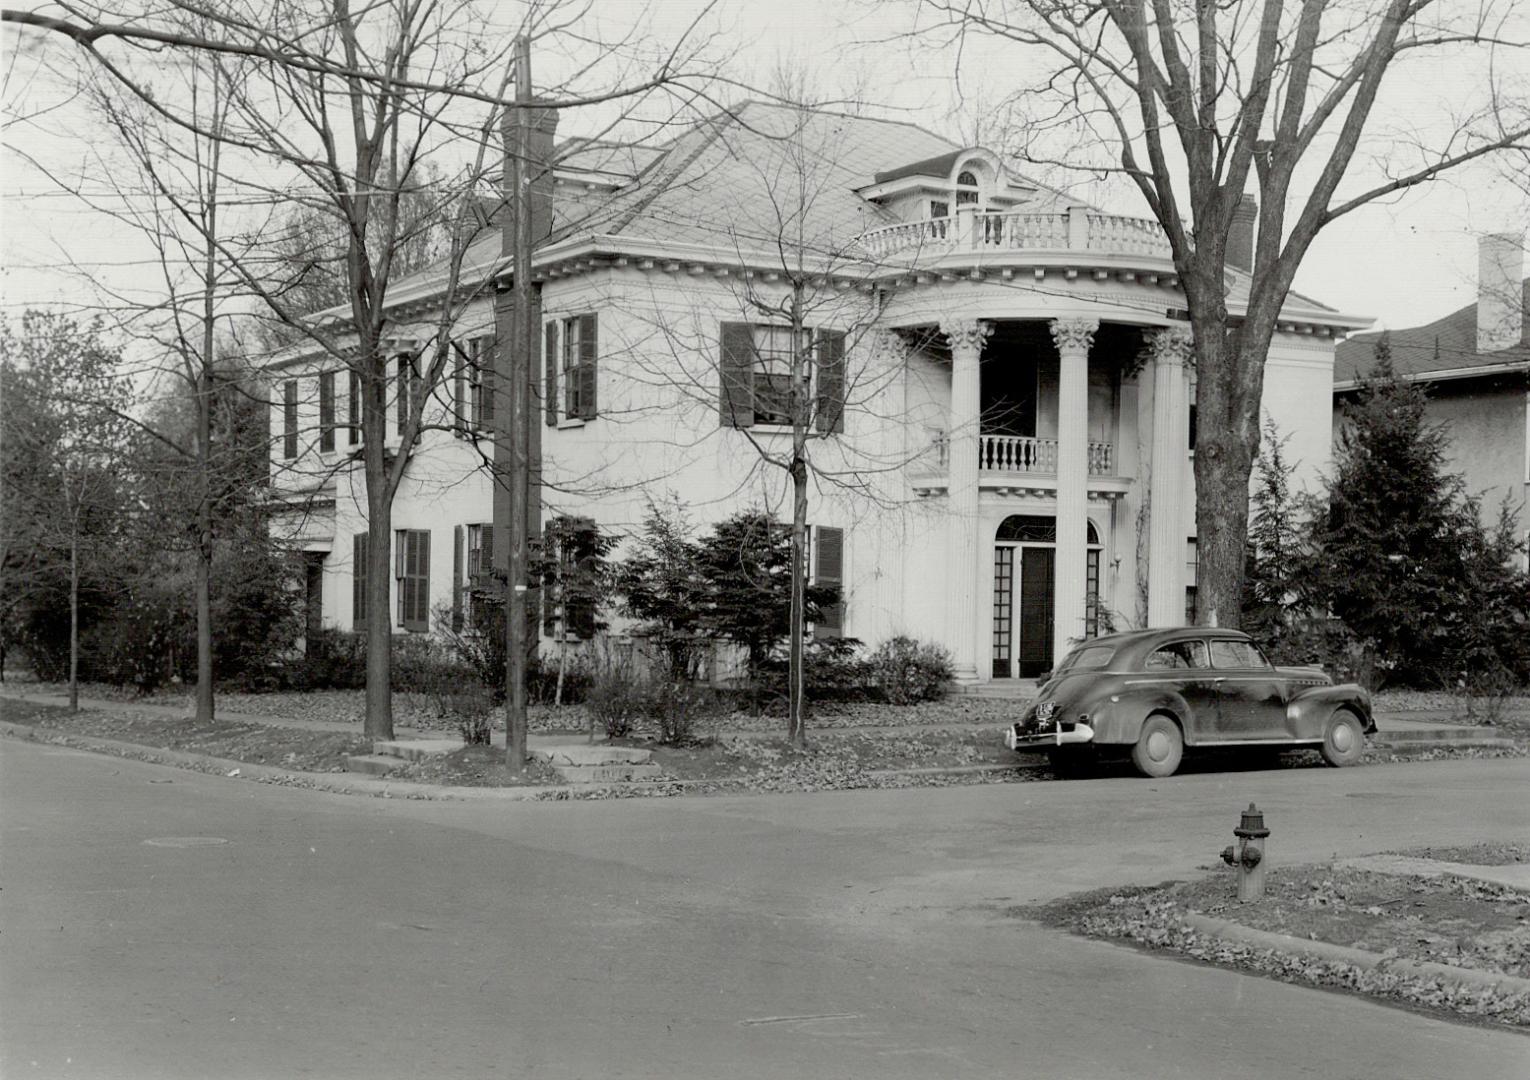 Jean MacArthur's home in Murfressboro Tenn